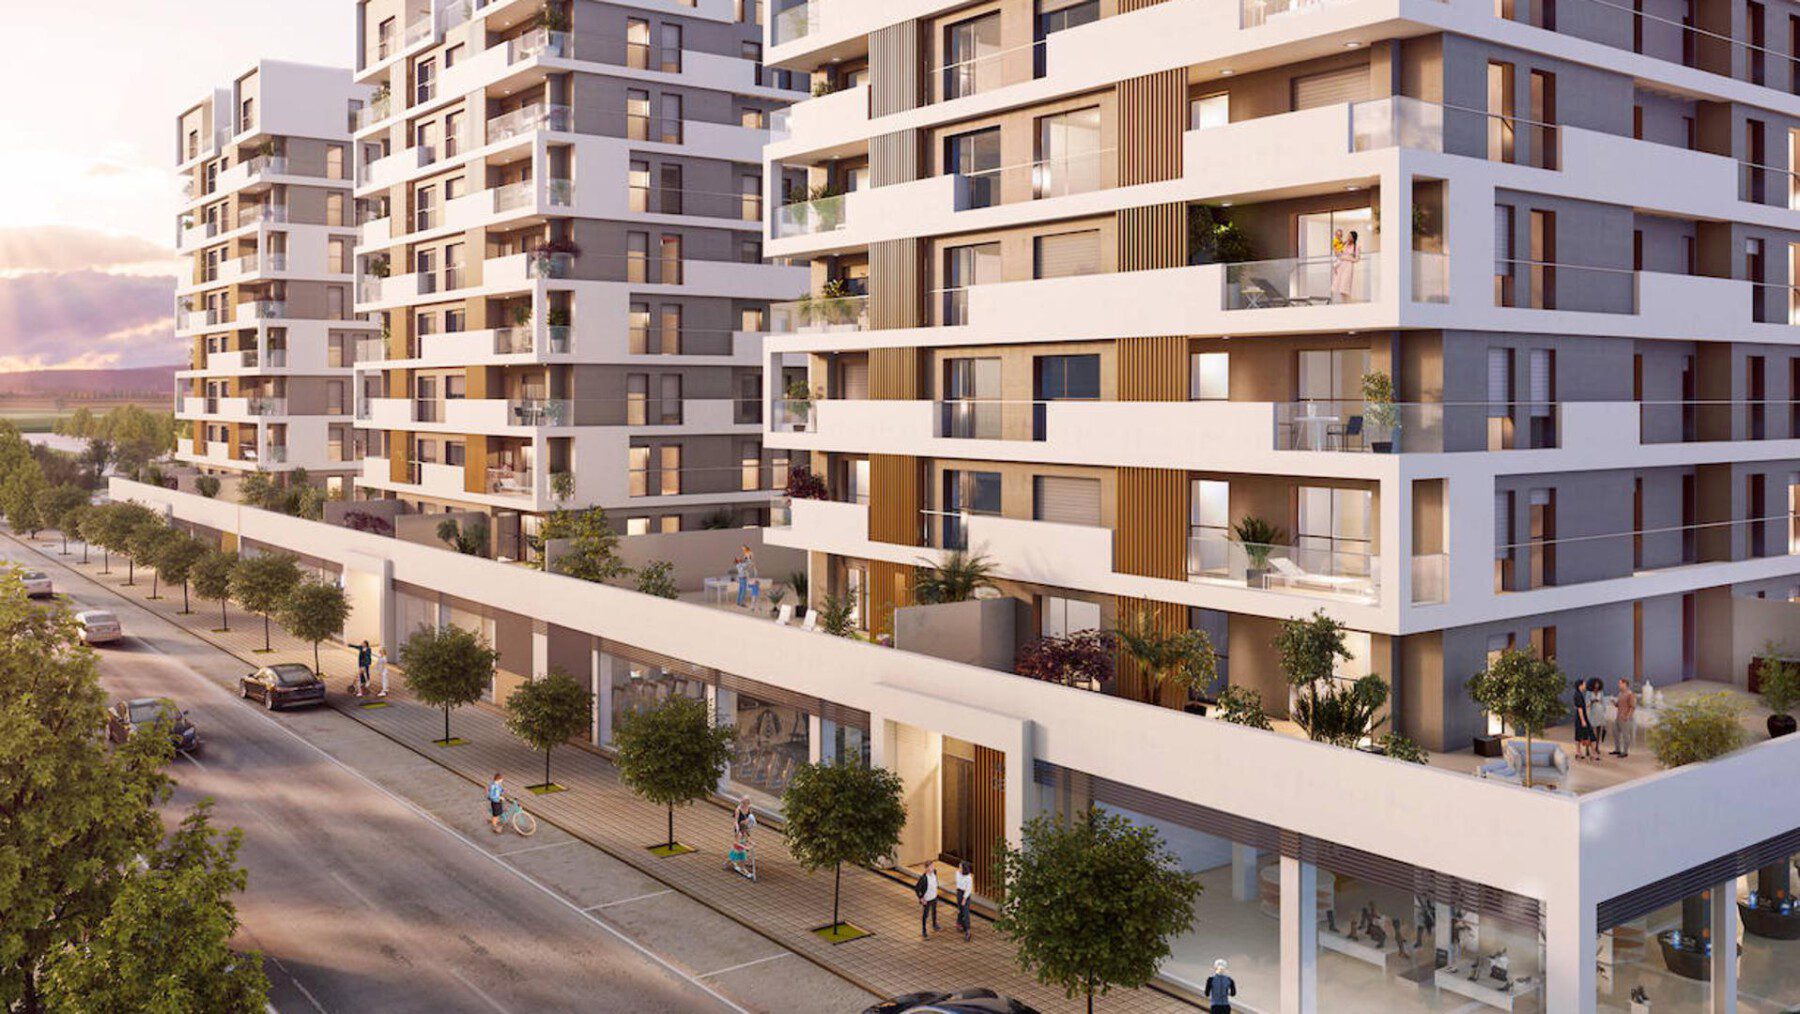 Civitas Pacensis creará más de 8.000 nuevas viviendas para la ciudad en los próximos años